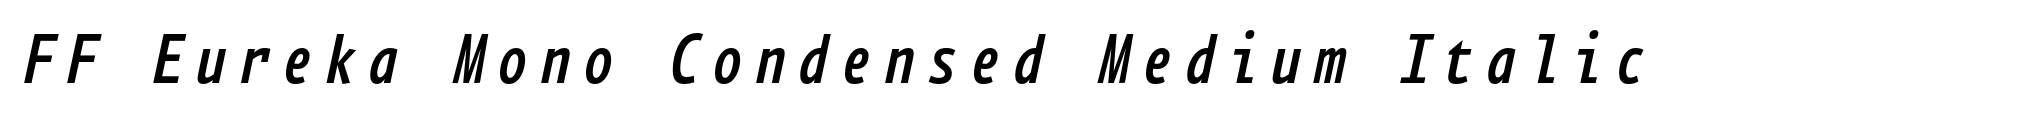 FF Eureka Mono Condensed Medium Italic image